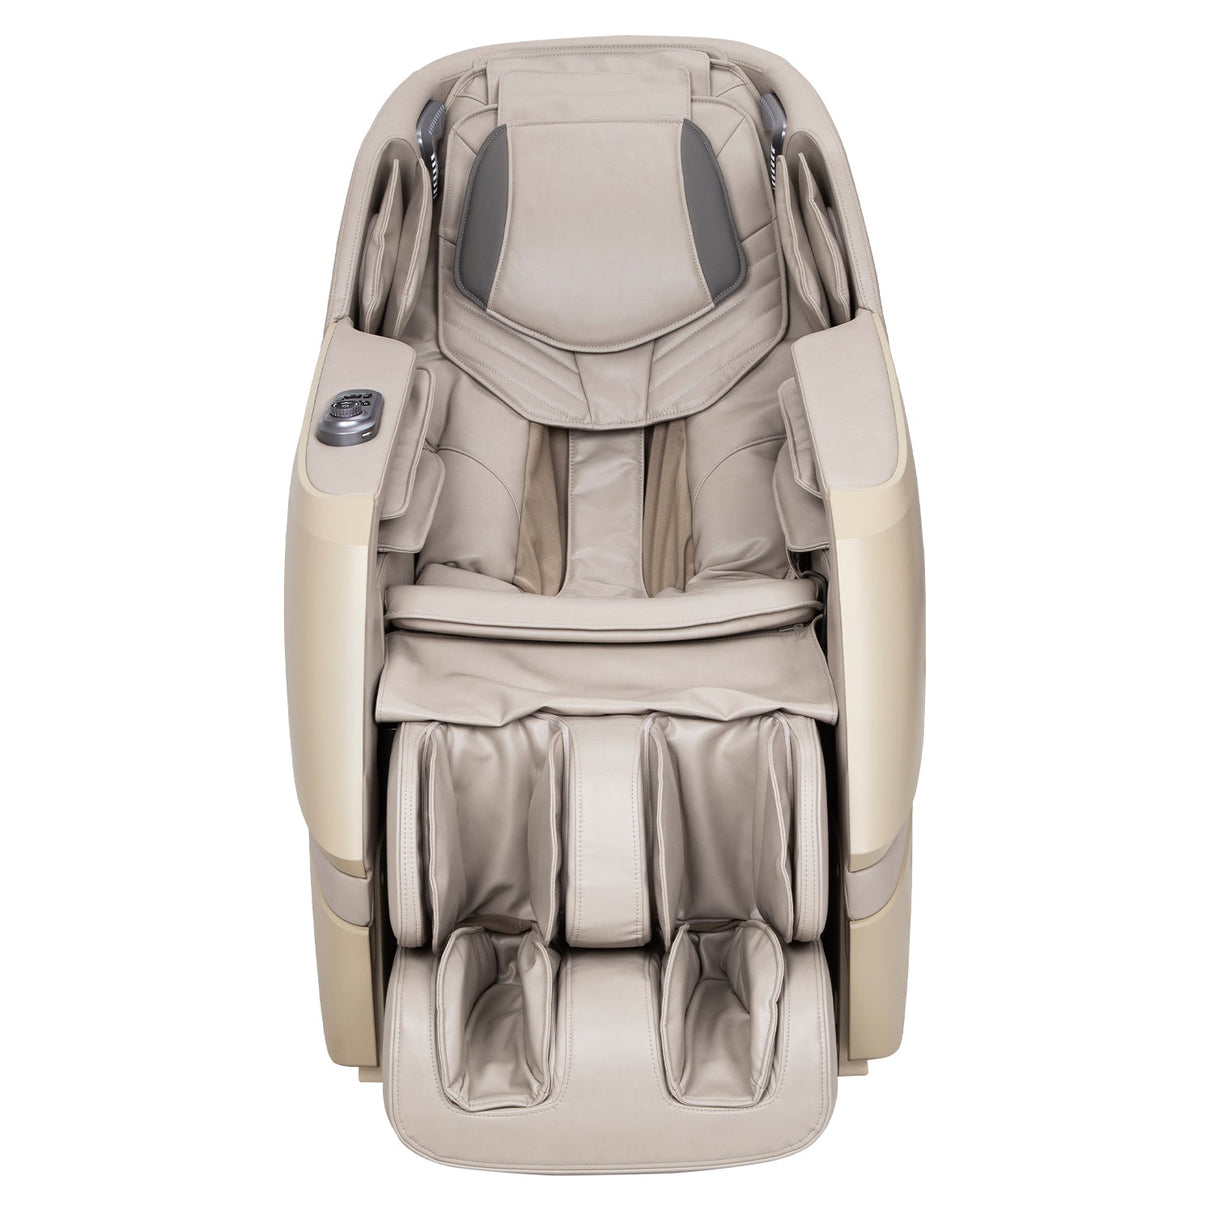 Titan | Luxe 3D Massage Chair